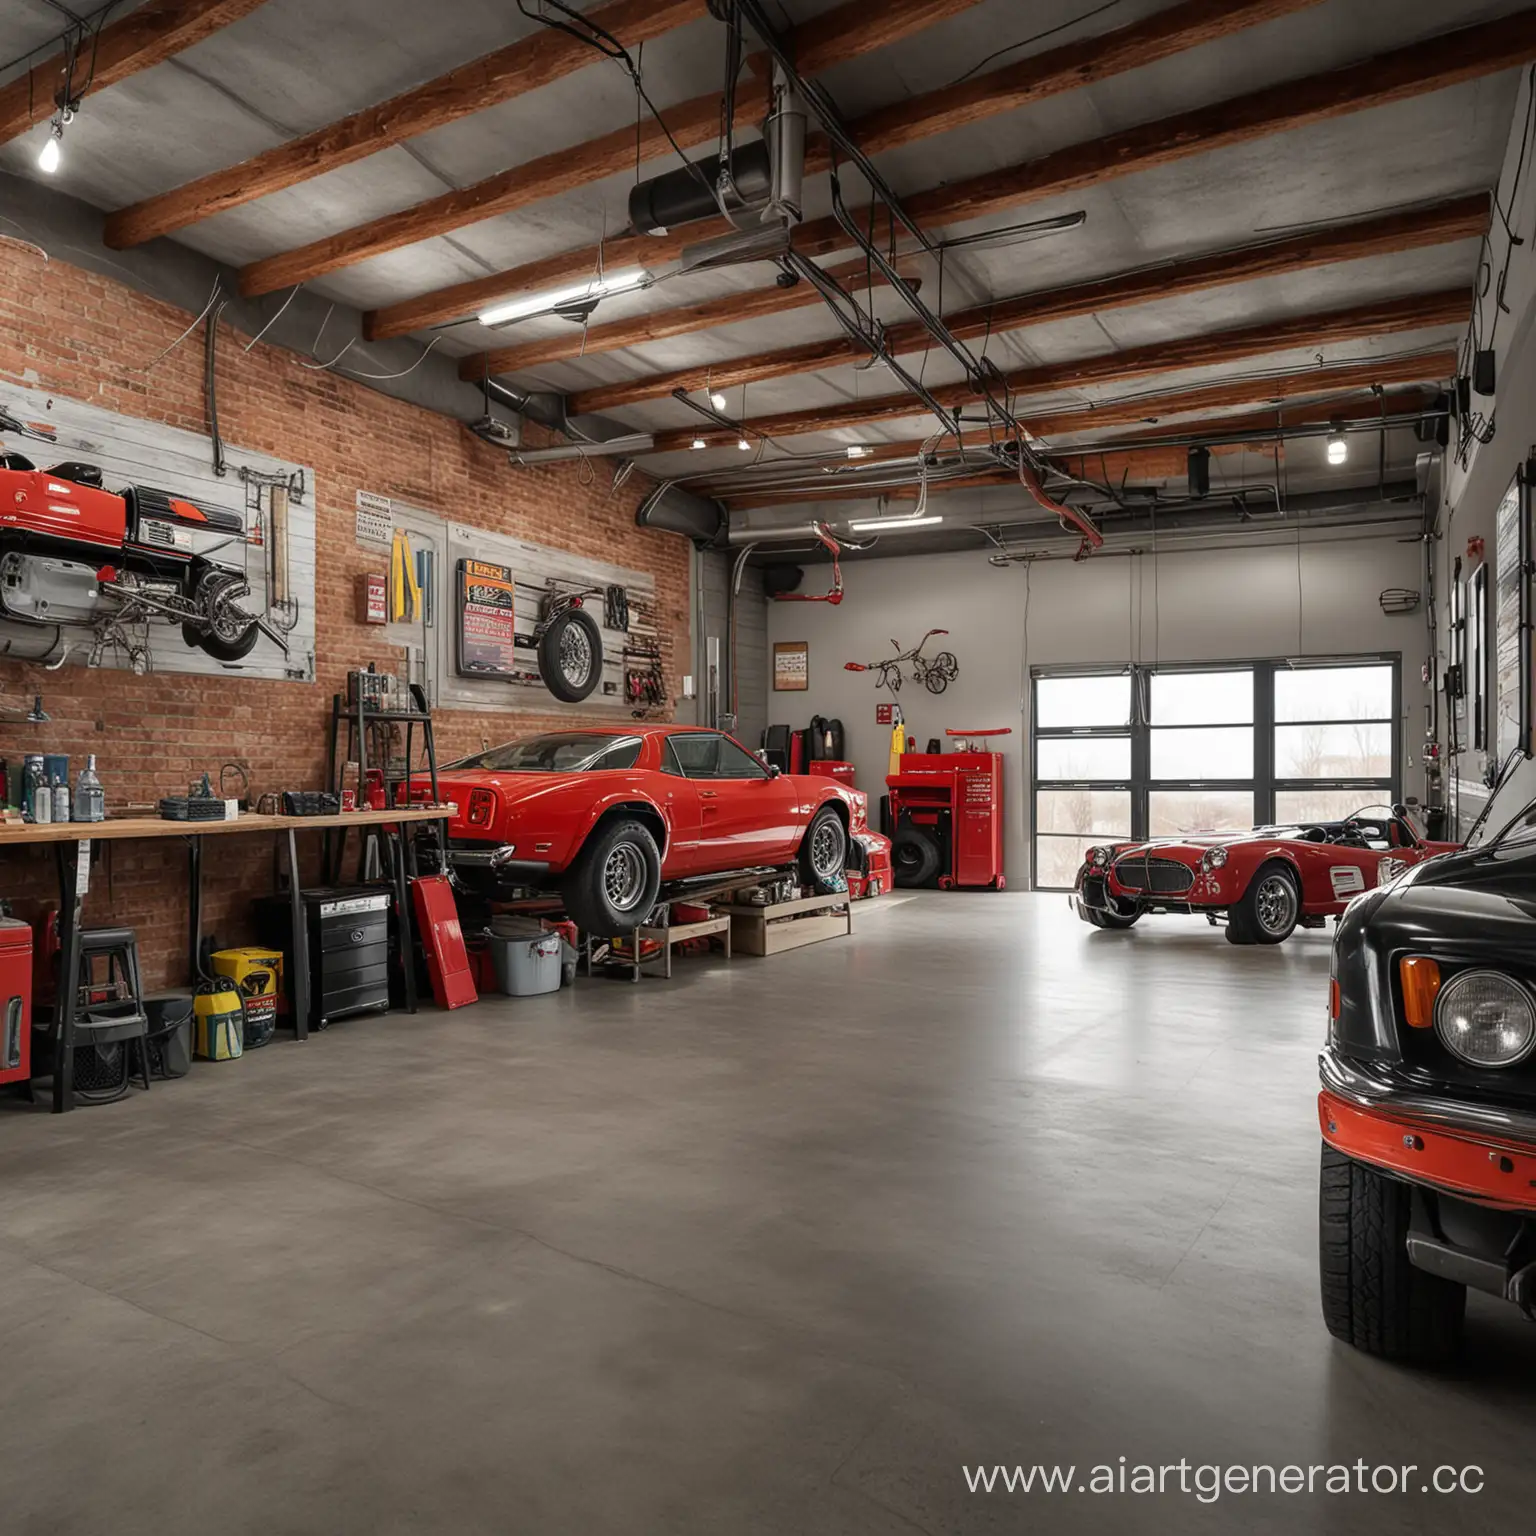 Rough-Car-Loft-Garage-with-Vintage-Auto-Parts